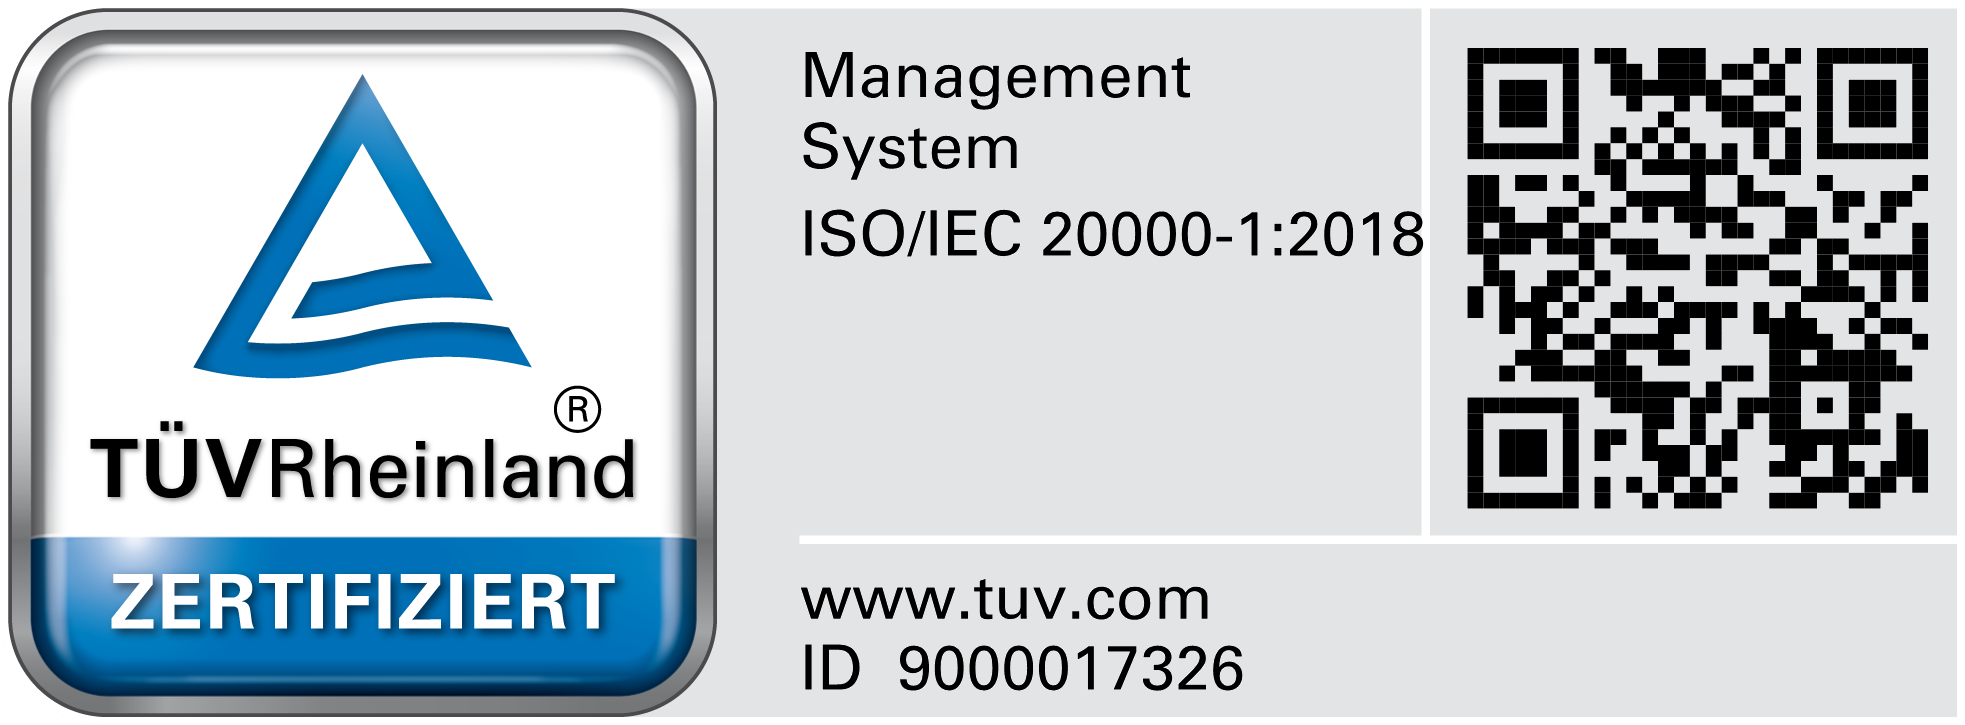 rhöncloud ist ISO/IEC 20000 zertifizierter IT-Spezialist und durch den TÜV Rheinland akkreditiert“